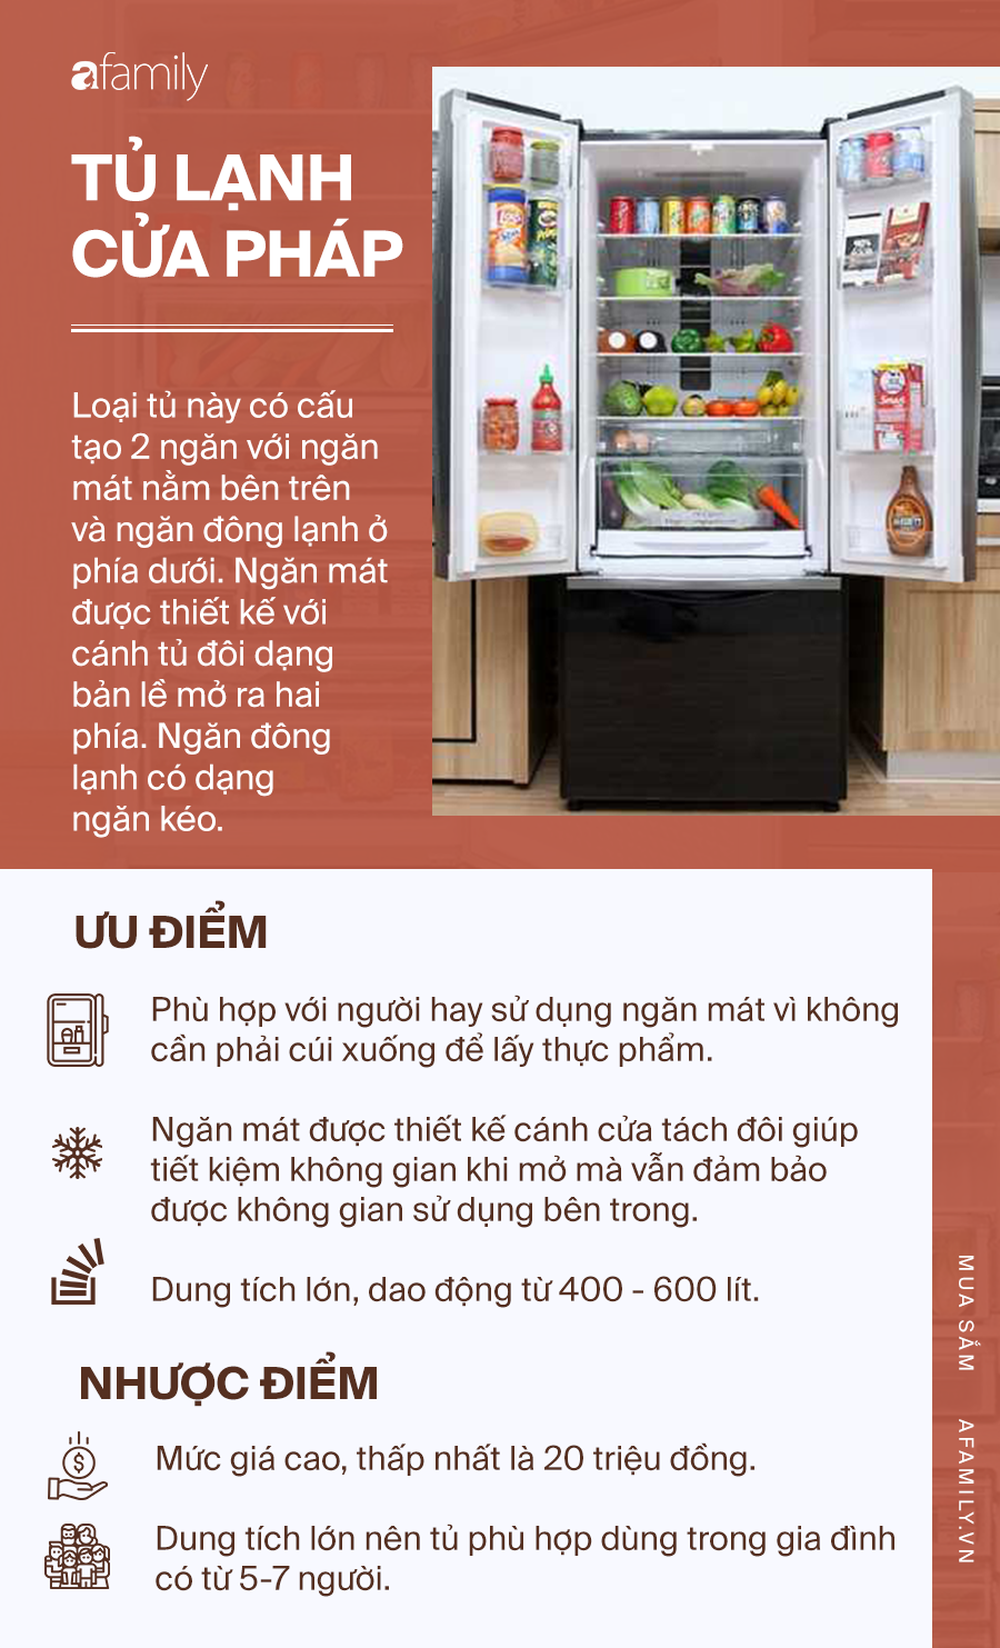 Kinh nghiệm chọn mua tủ lạnh theo ưu, nhược điểm: Mỗi loại một kiểu, phải tìm hiểu mới mong lựa được cái ưng ý nhất - Ảnh 3.